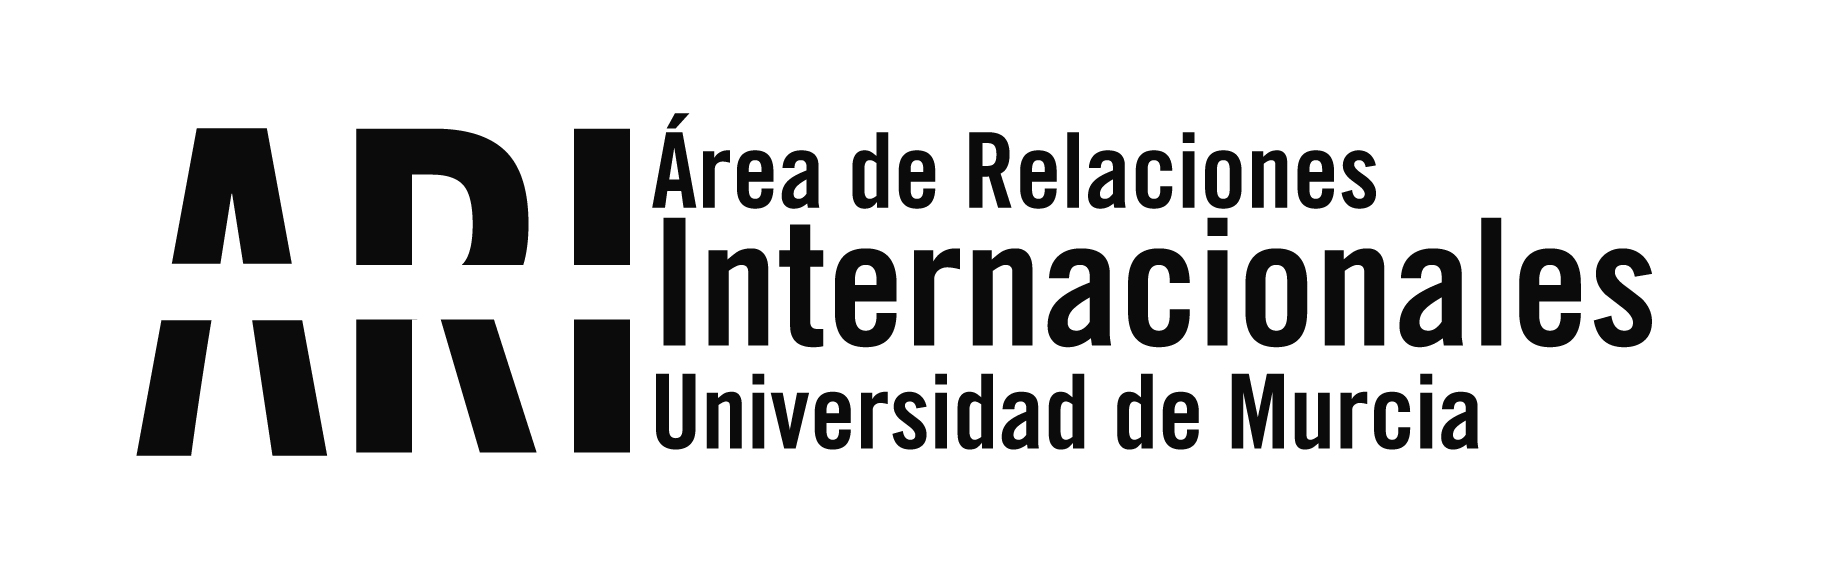 2019 - Viajes Institucionales - Área de Relaciones Internacionales